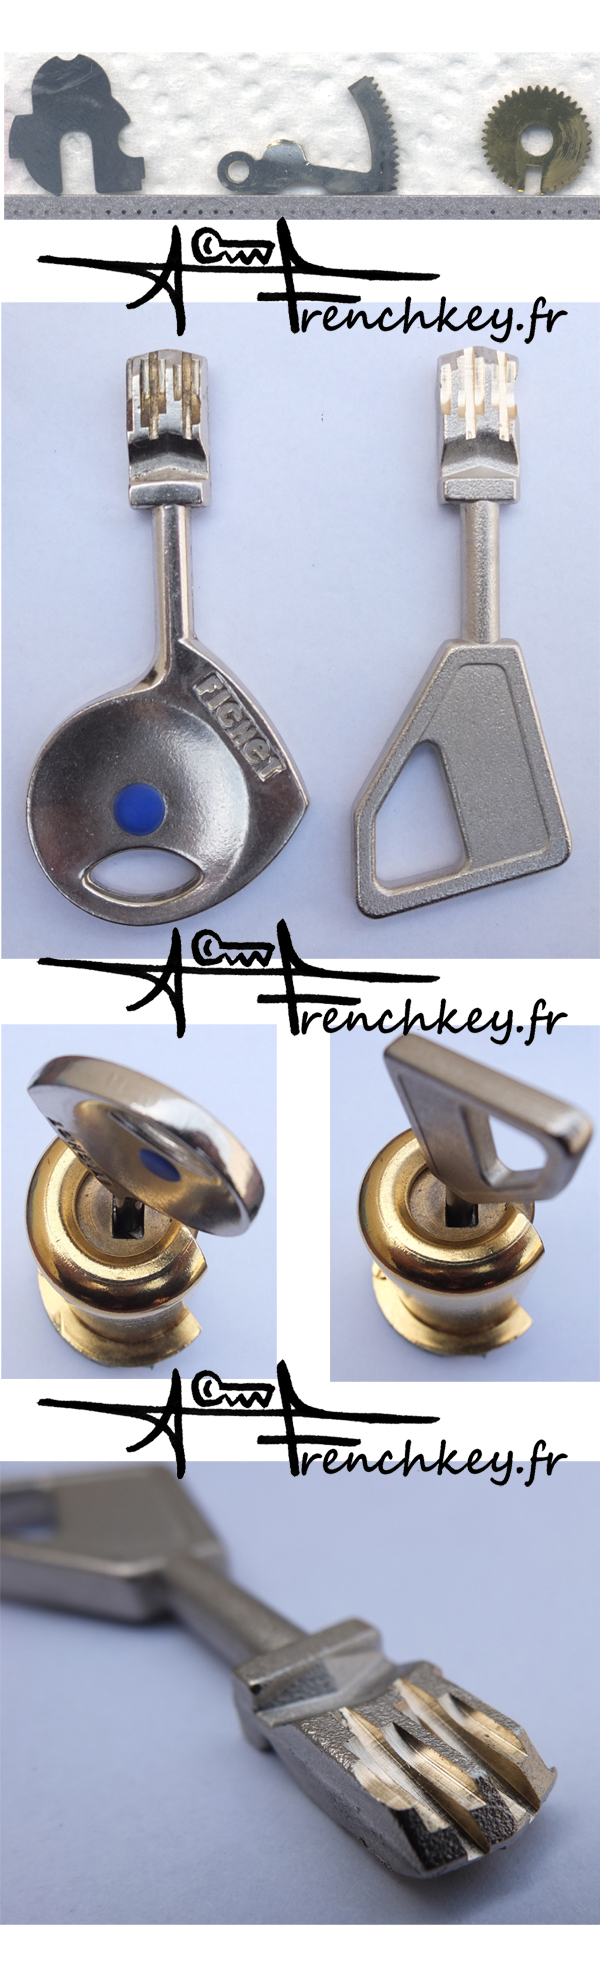 FIchet 787 cnc cut key